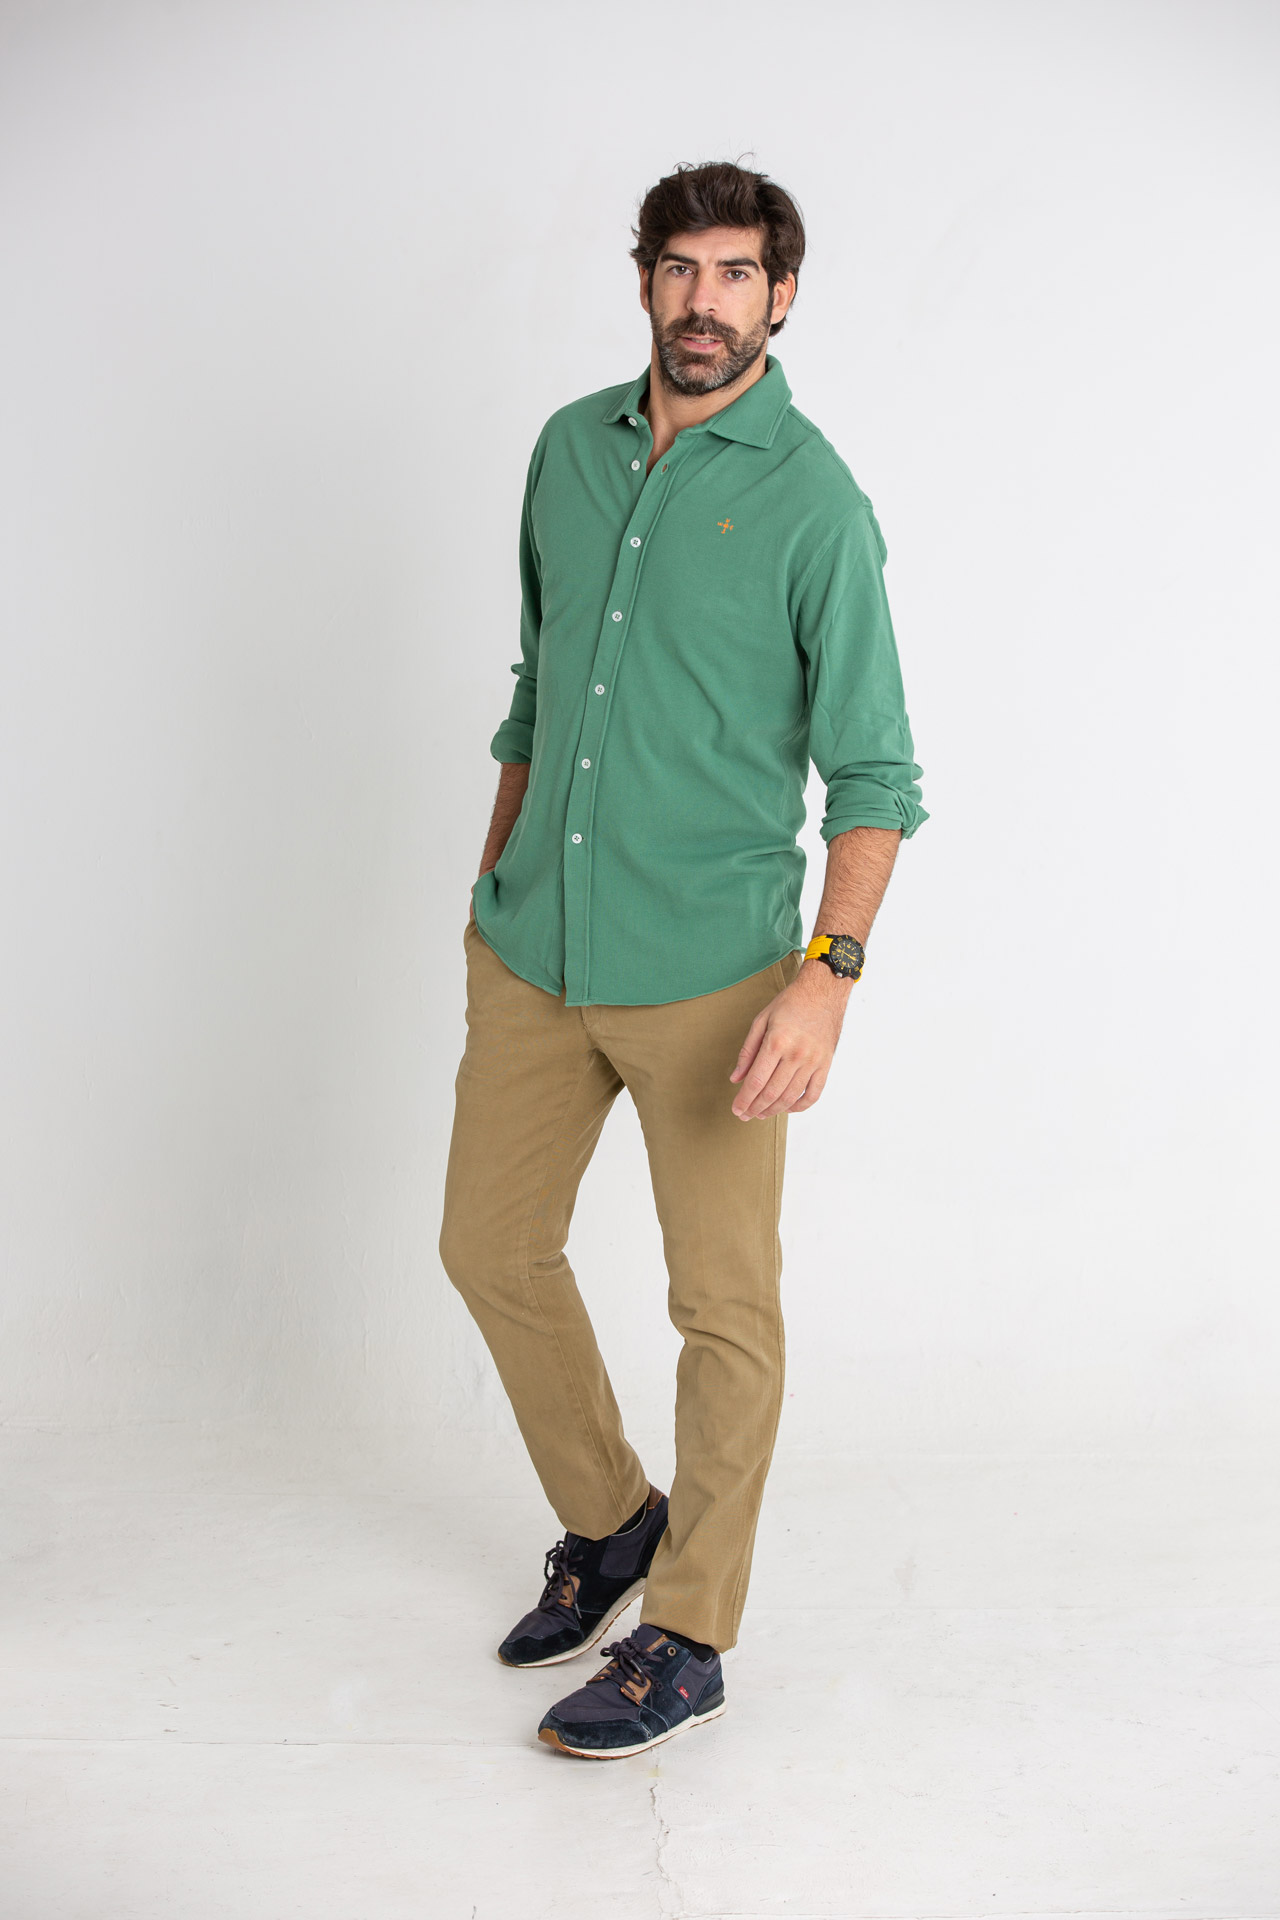 Modelo masculino con camisa de color verde oliva